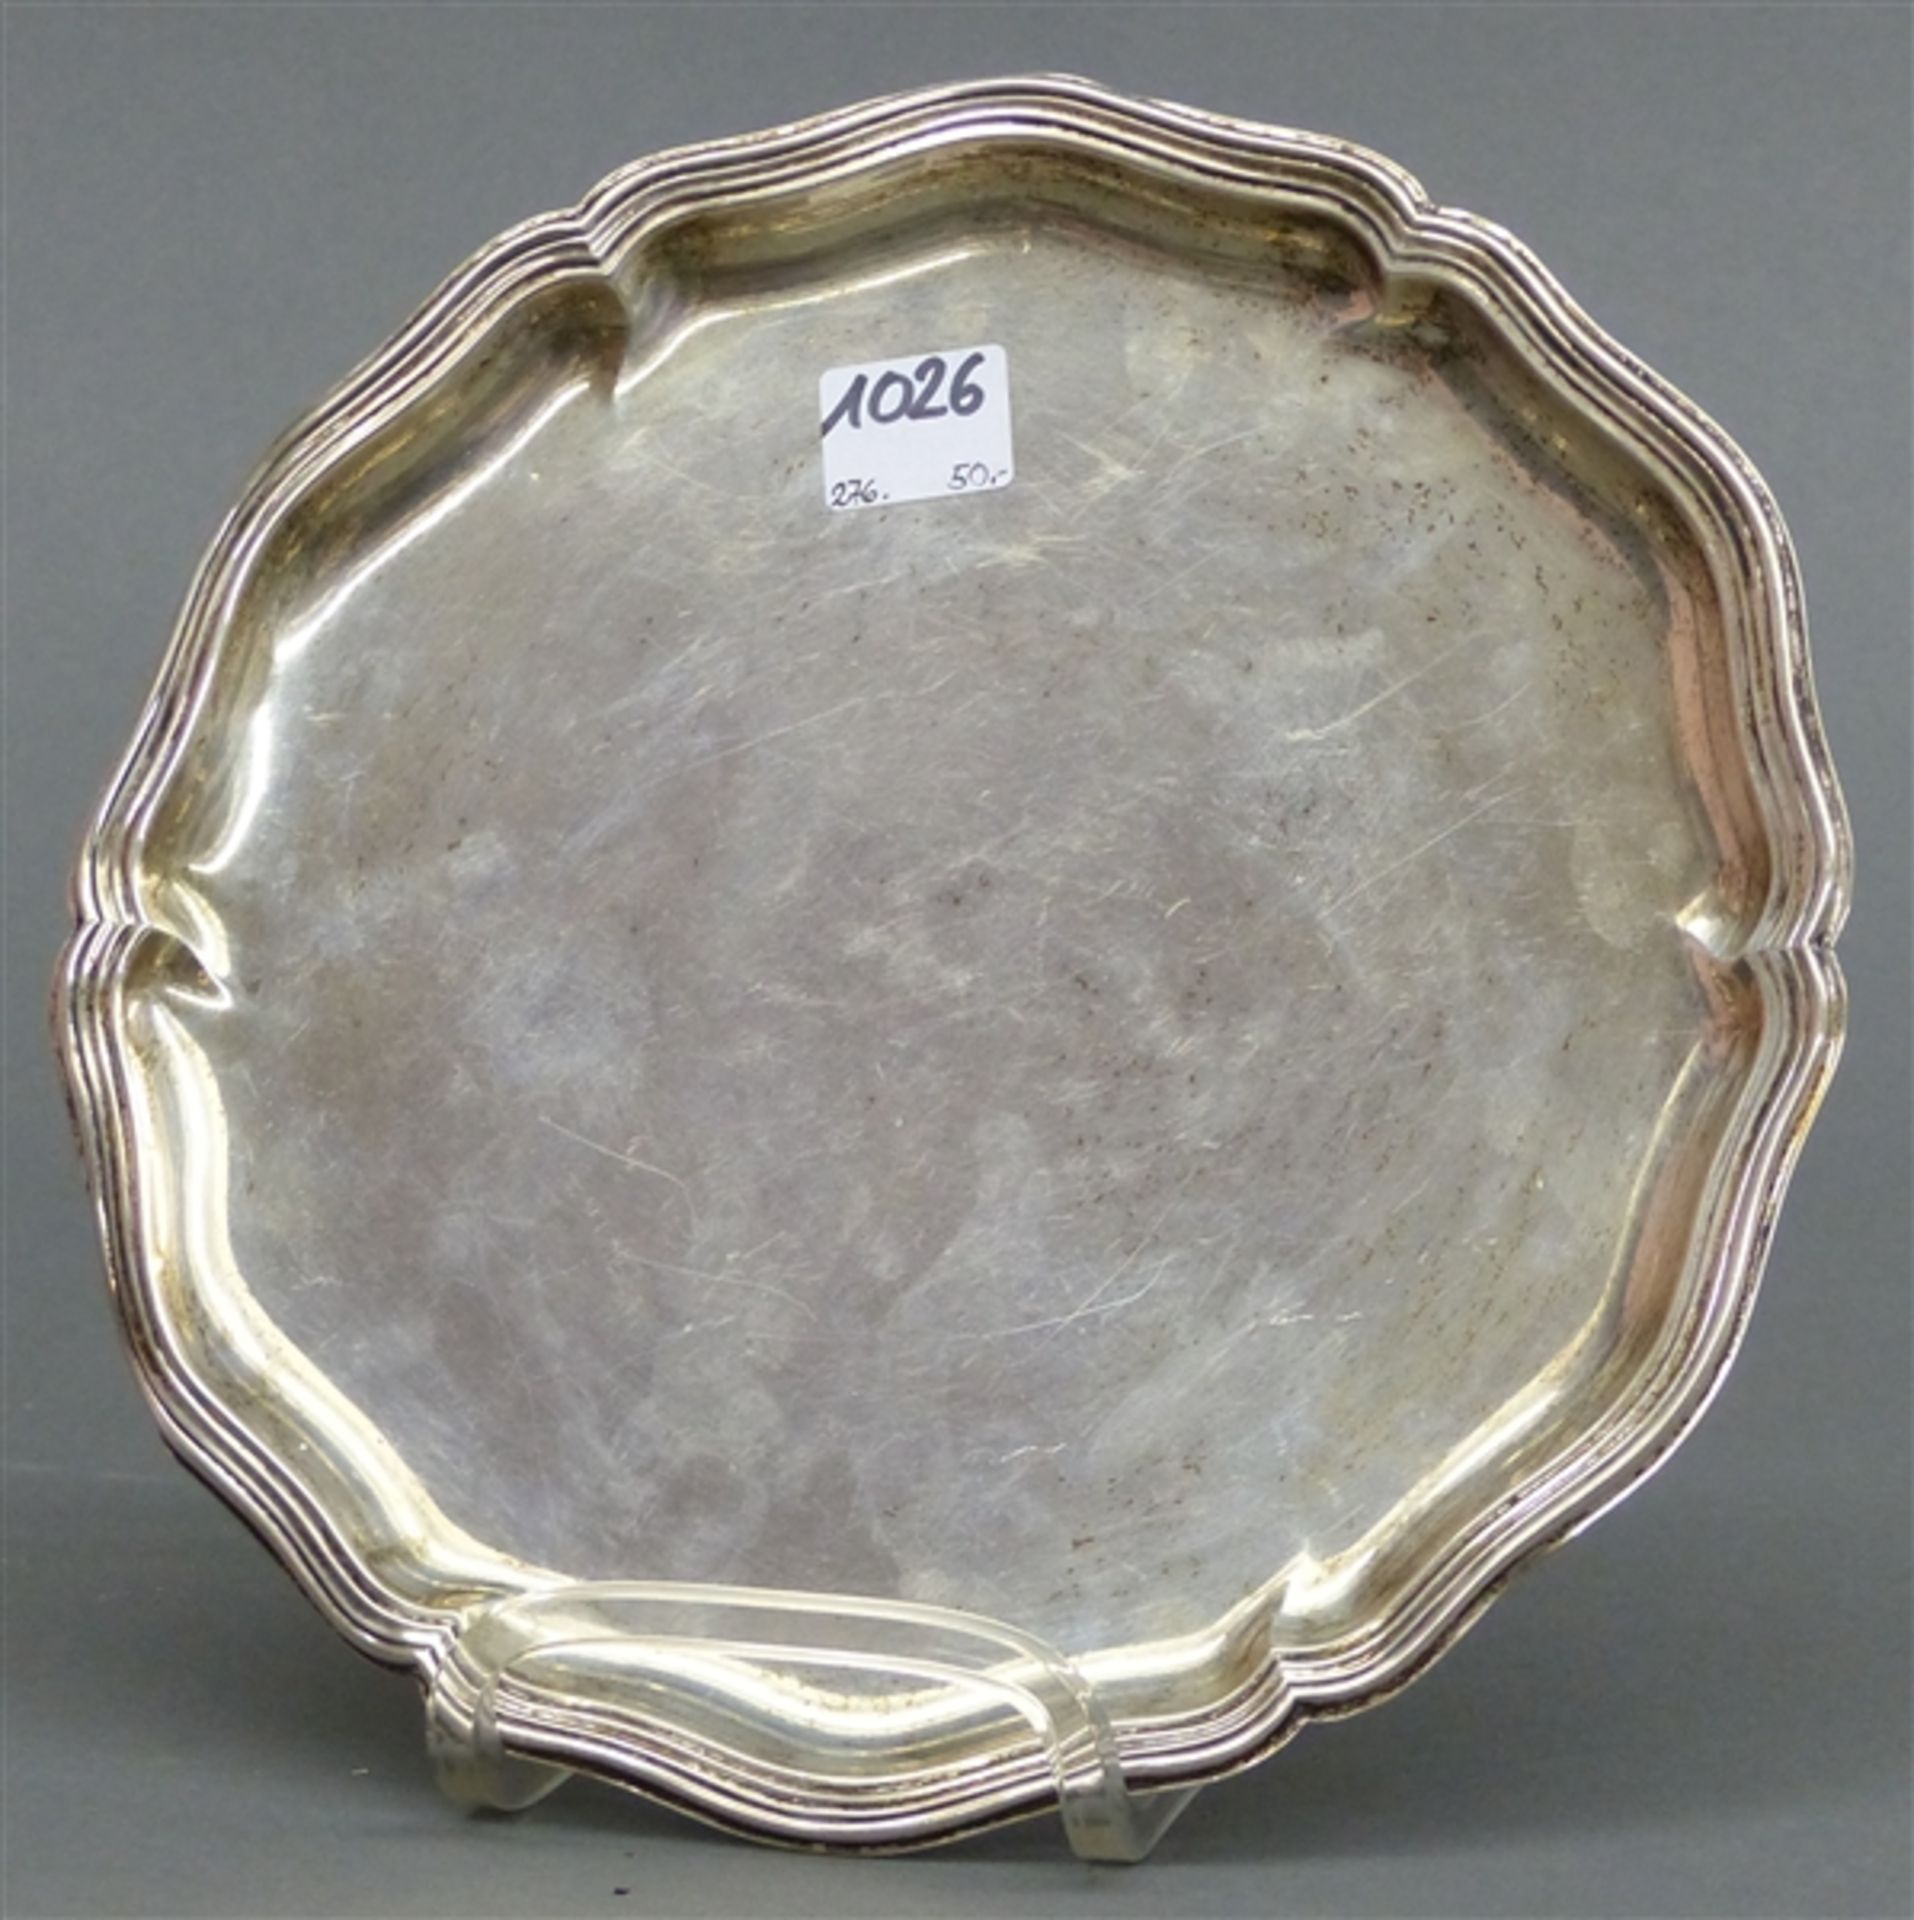 Tablett 835 Silber, barocke Form, Wellrand, ca. 85 g schwer, d 21 cm,